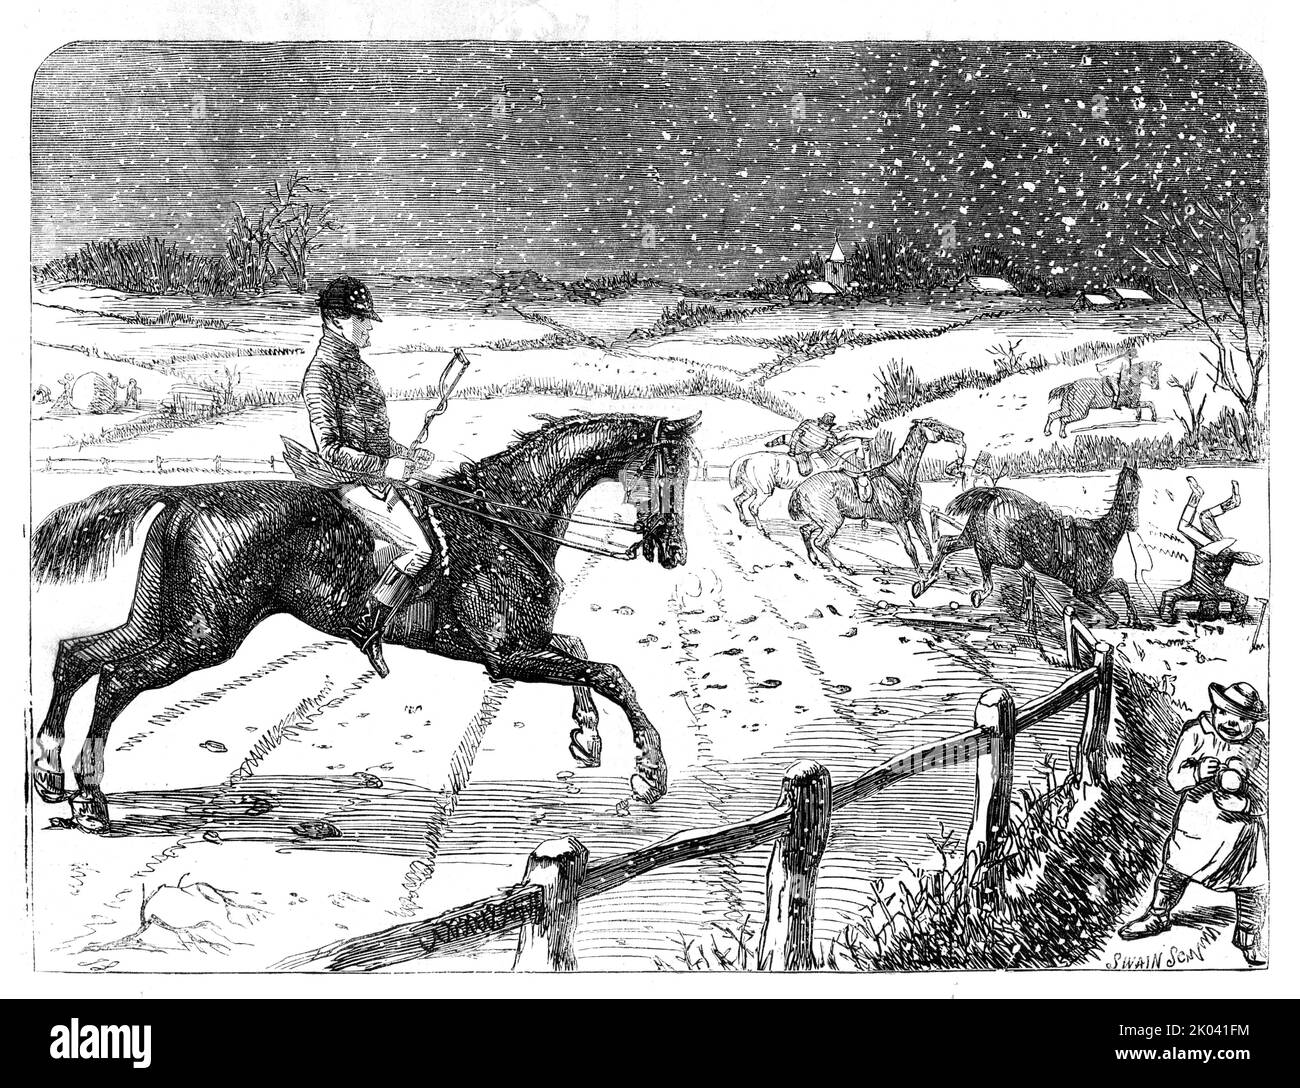 Très bon de lui - dessiné par John Leech, 1854. Équitation dans la neige. De "Illustrated London News", 1854. Banque D'Images